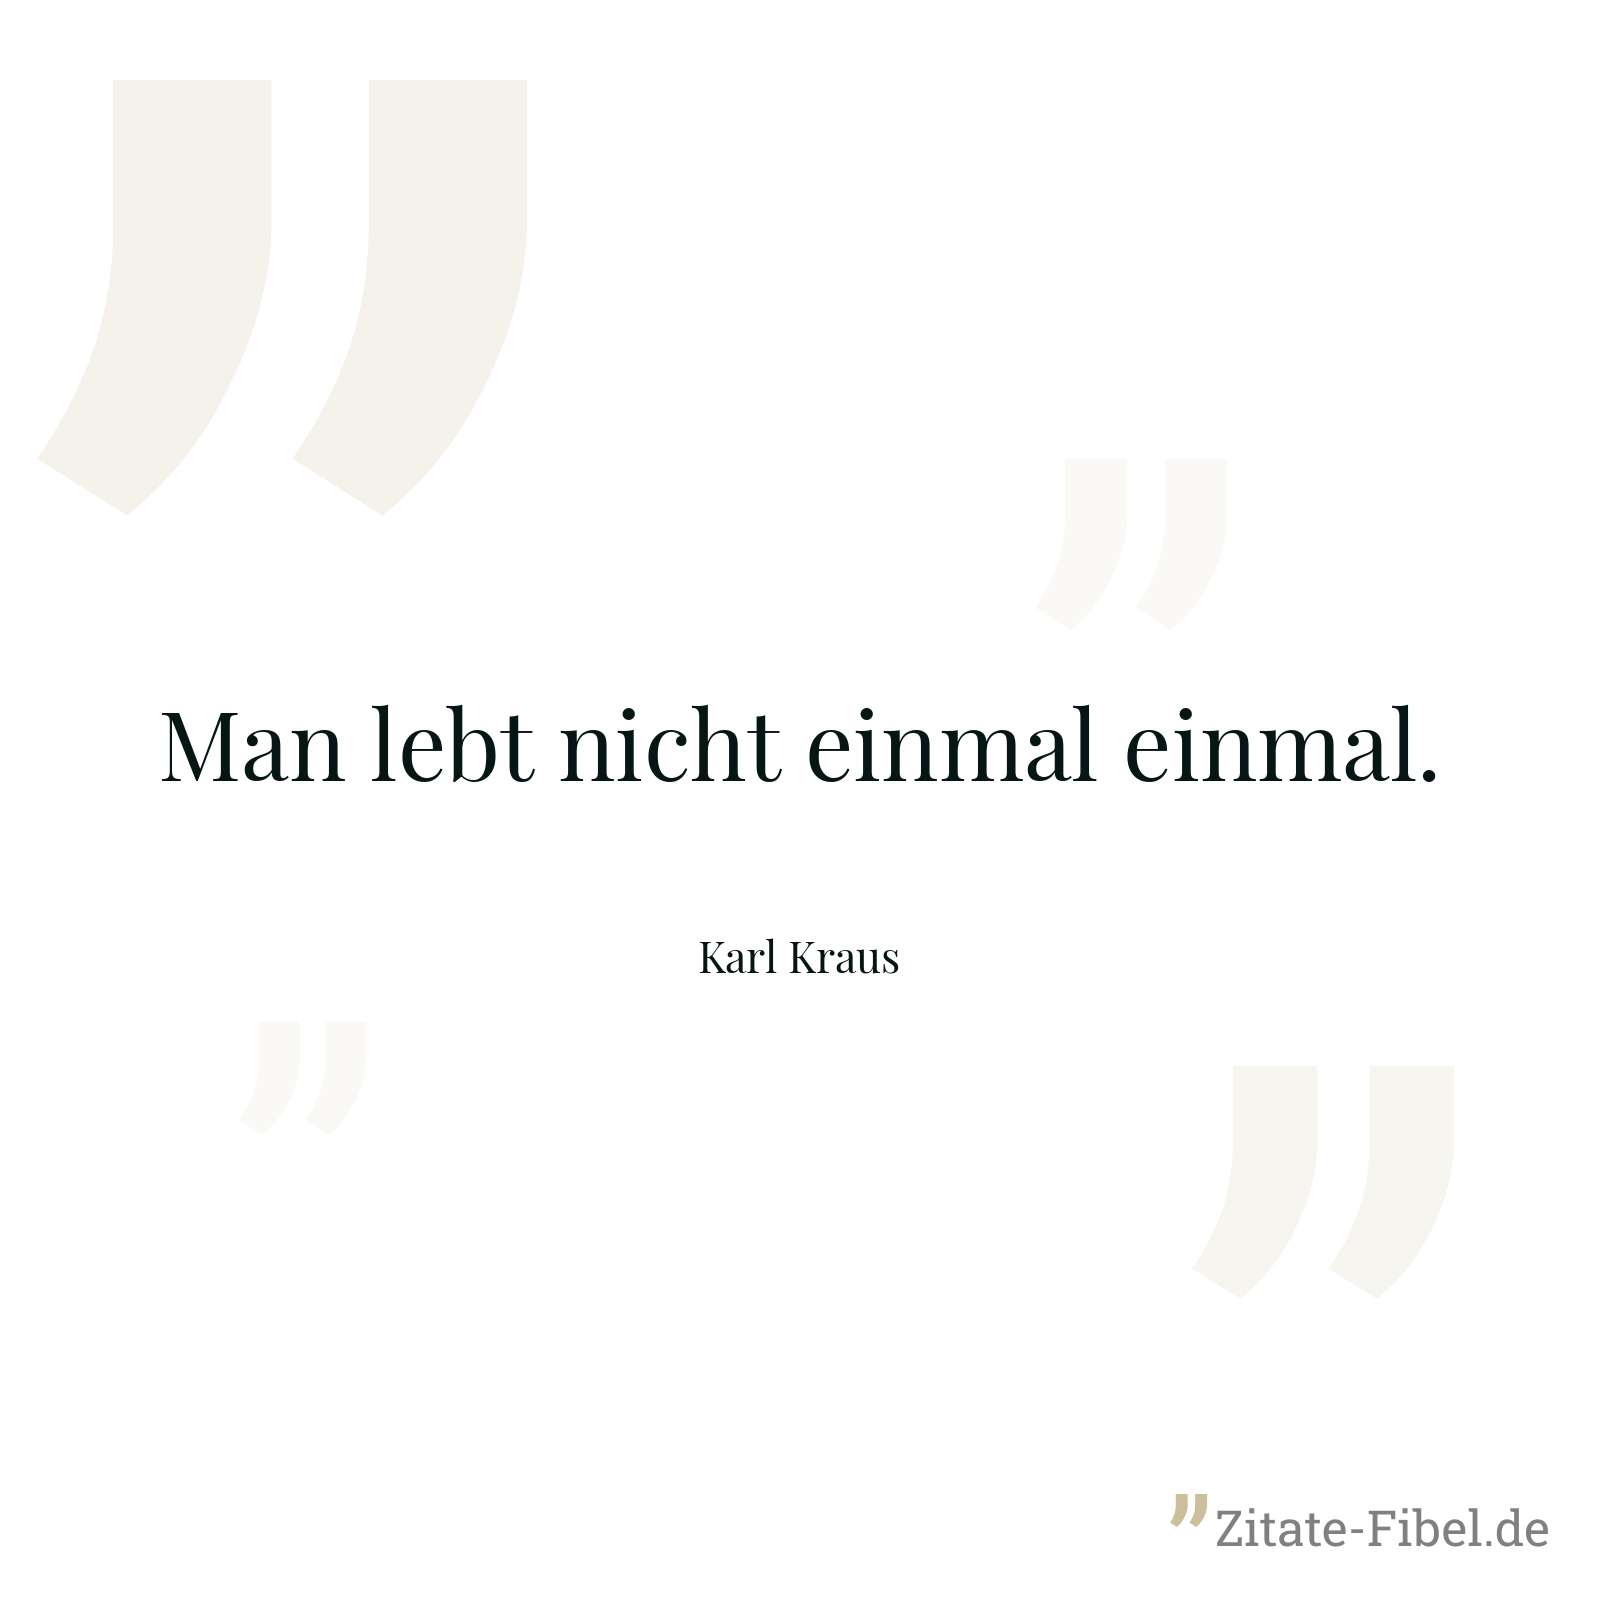 Man lebt nicht einmal einmal. - Karl Kraus